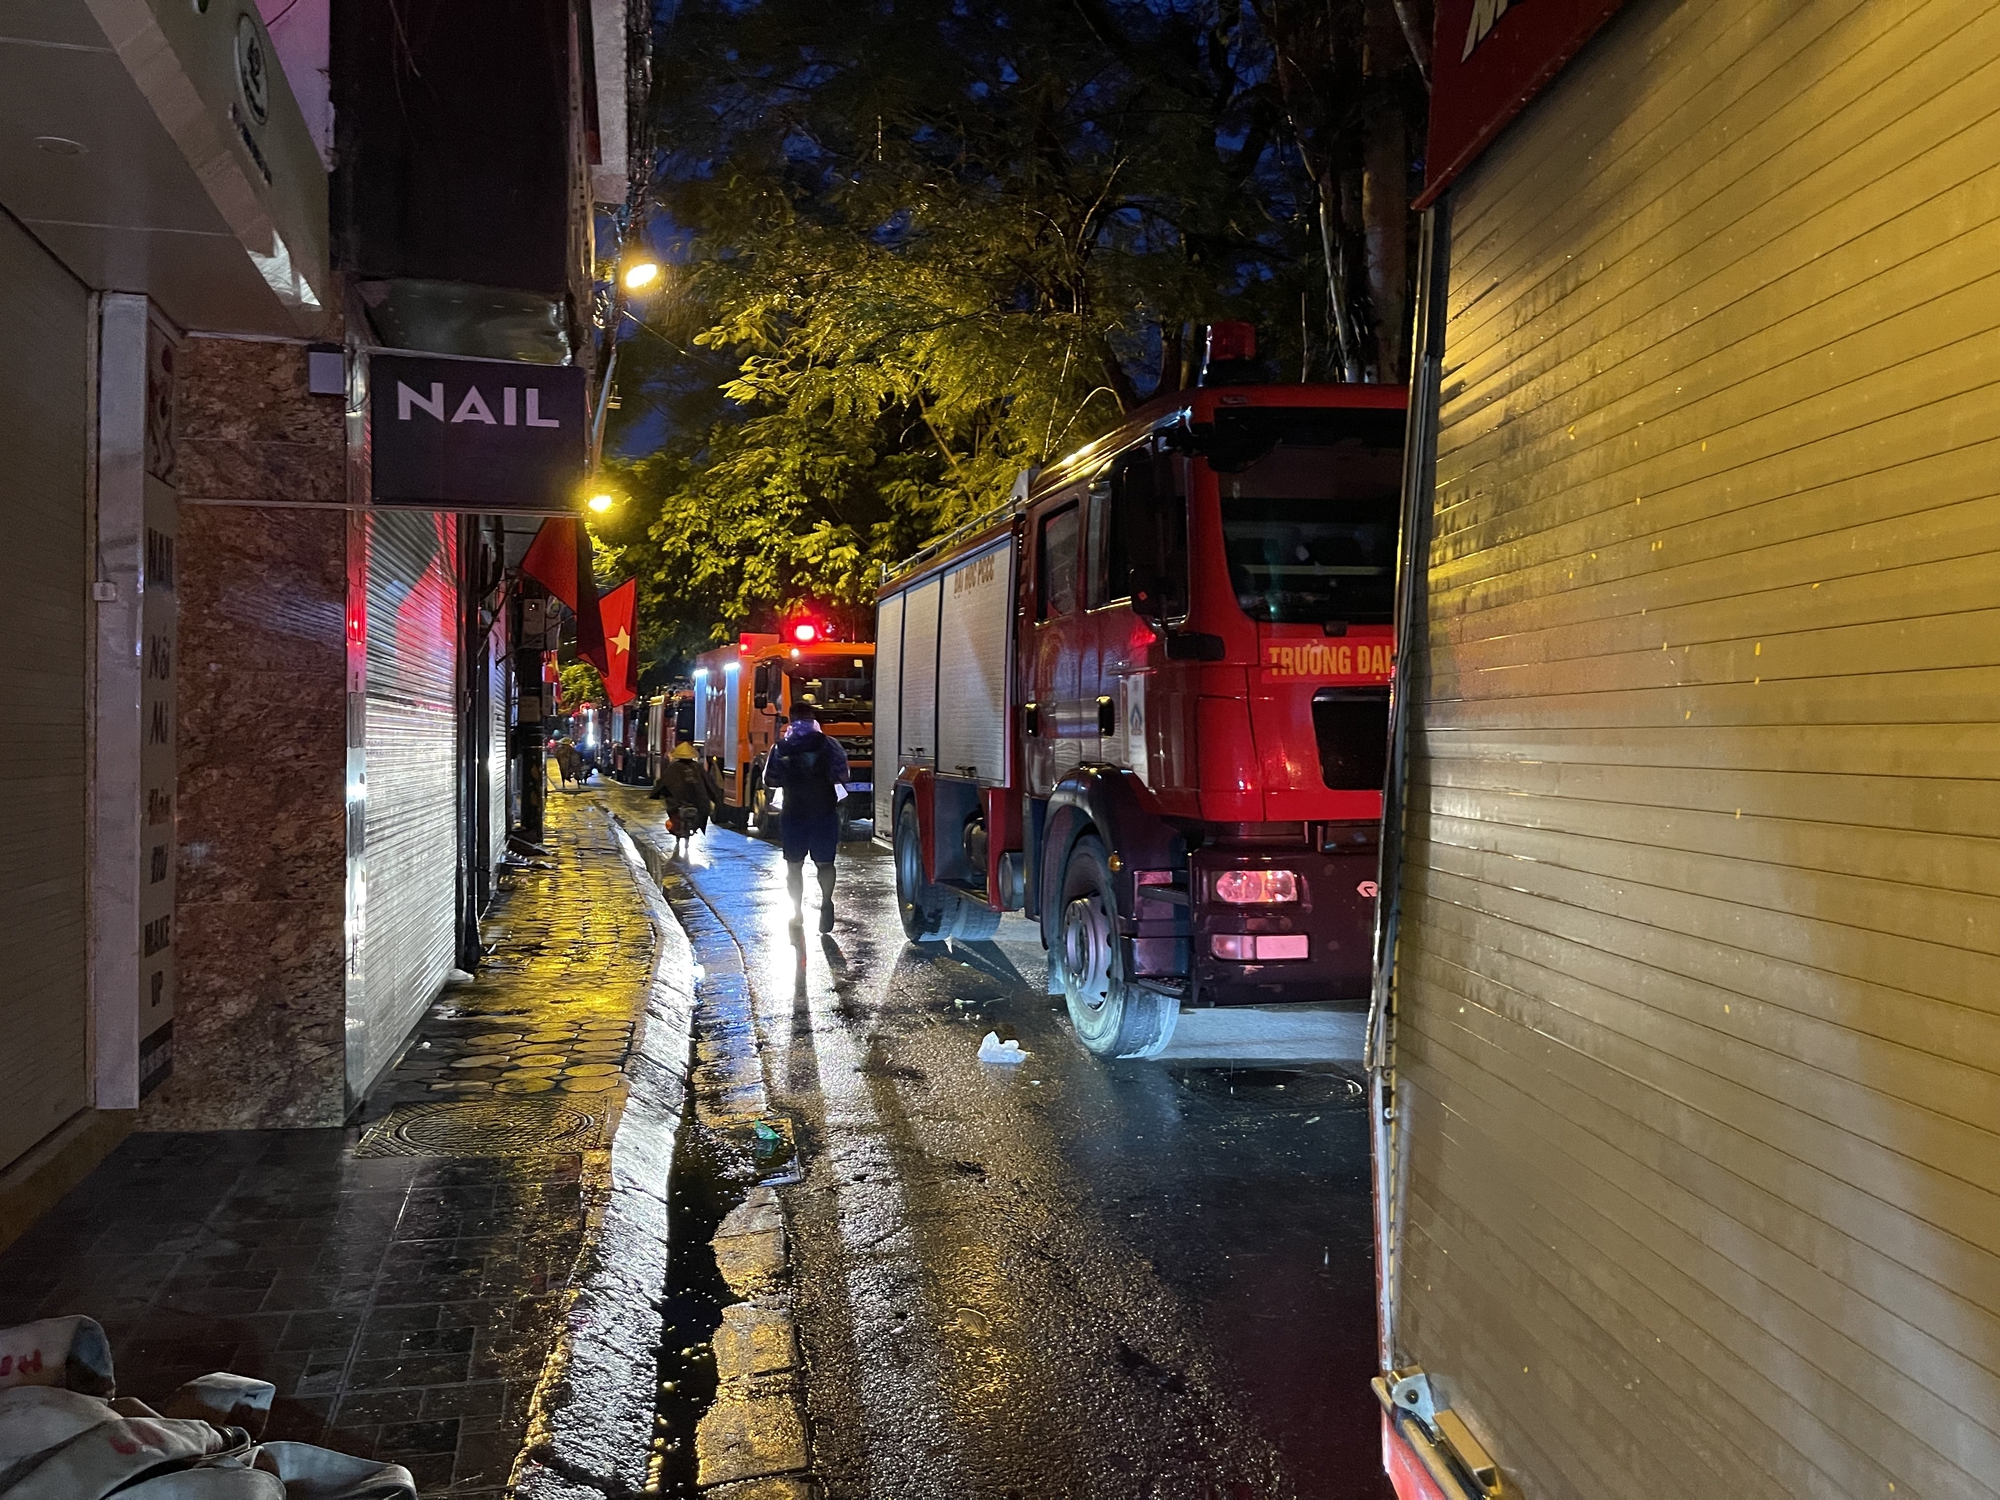 Hiện trường vụ cháy chung cư mini ở Hà Nội, nhiều nạn nhân được đưa ra ngoài - Ảnh 1.